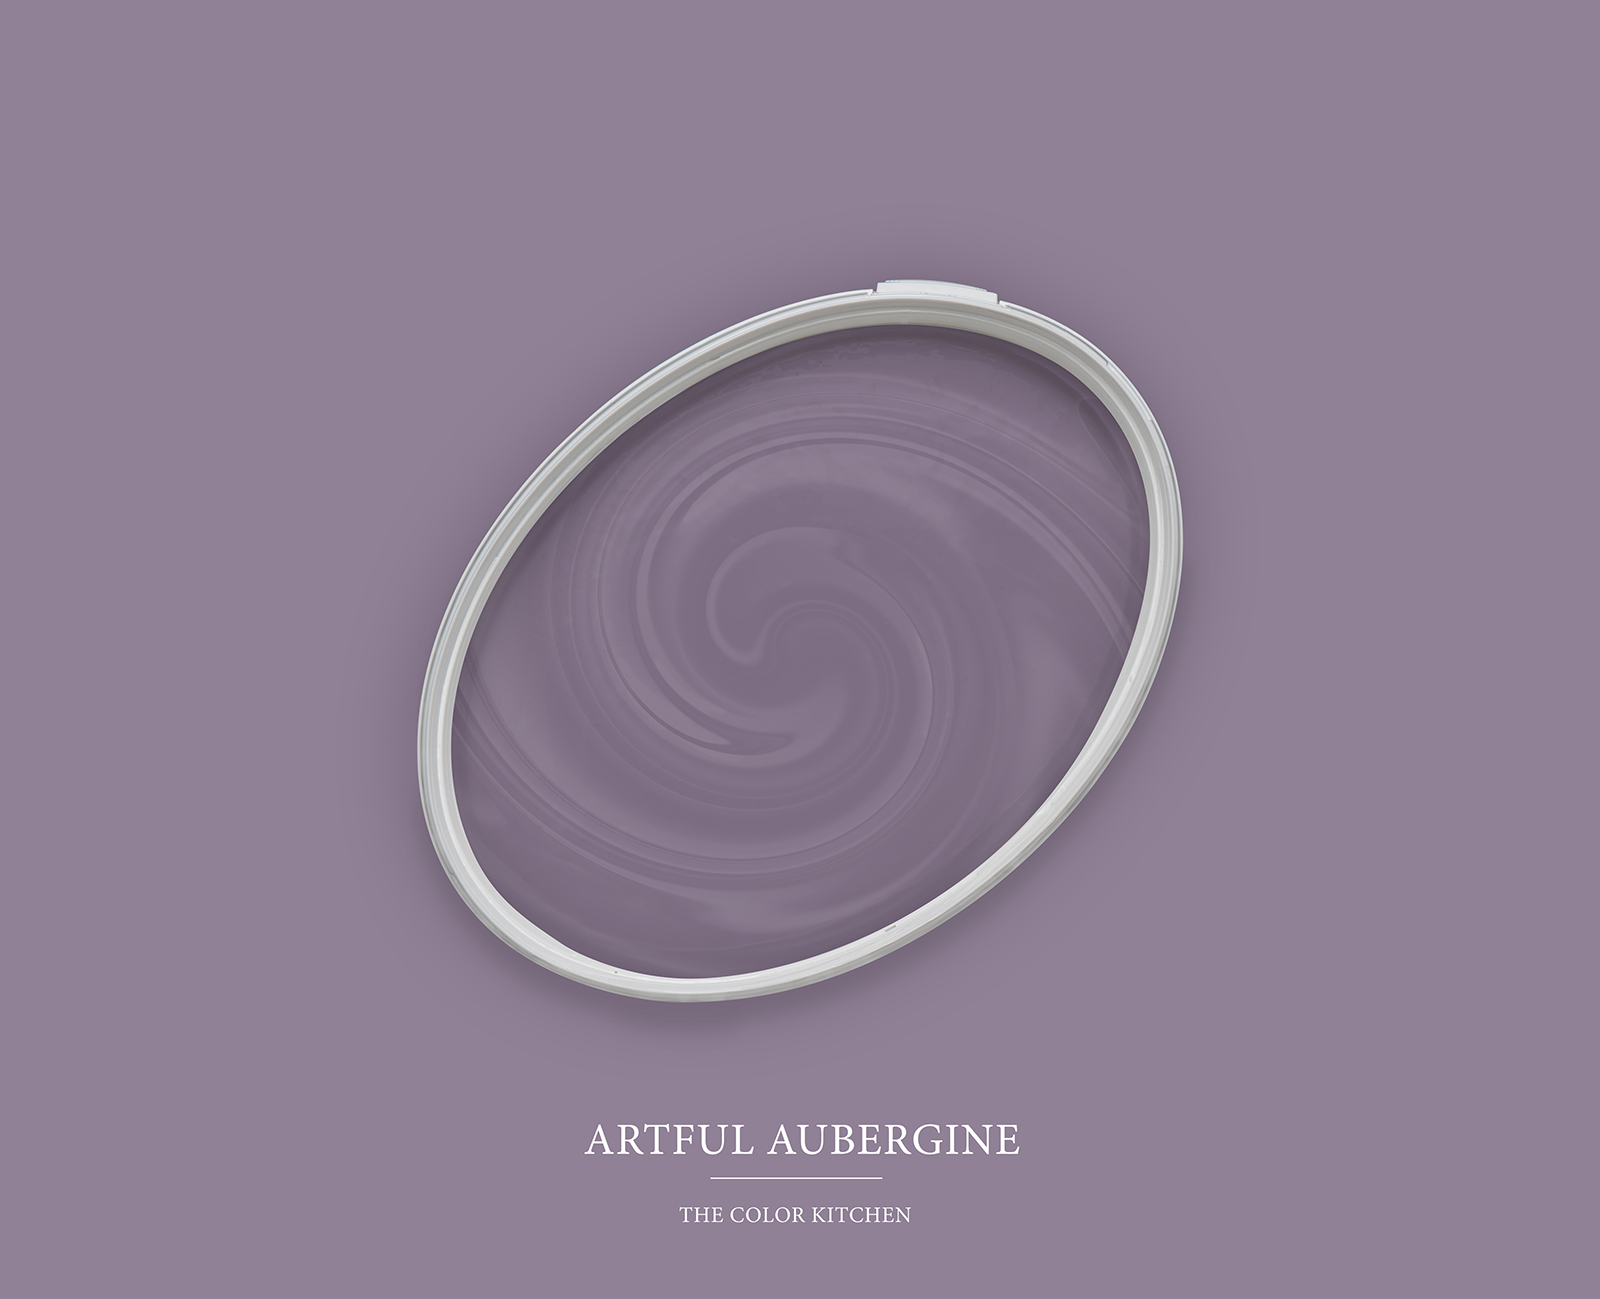         Wandfarbe TCK2006 »Artful Aubergine« in kräftigem Violett – 2,5 Liter
    